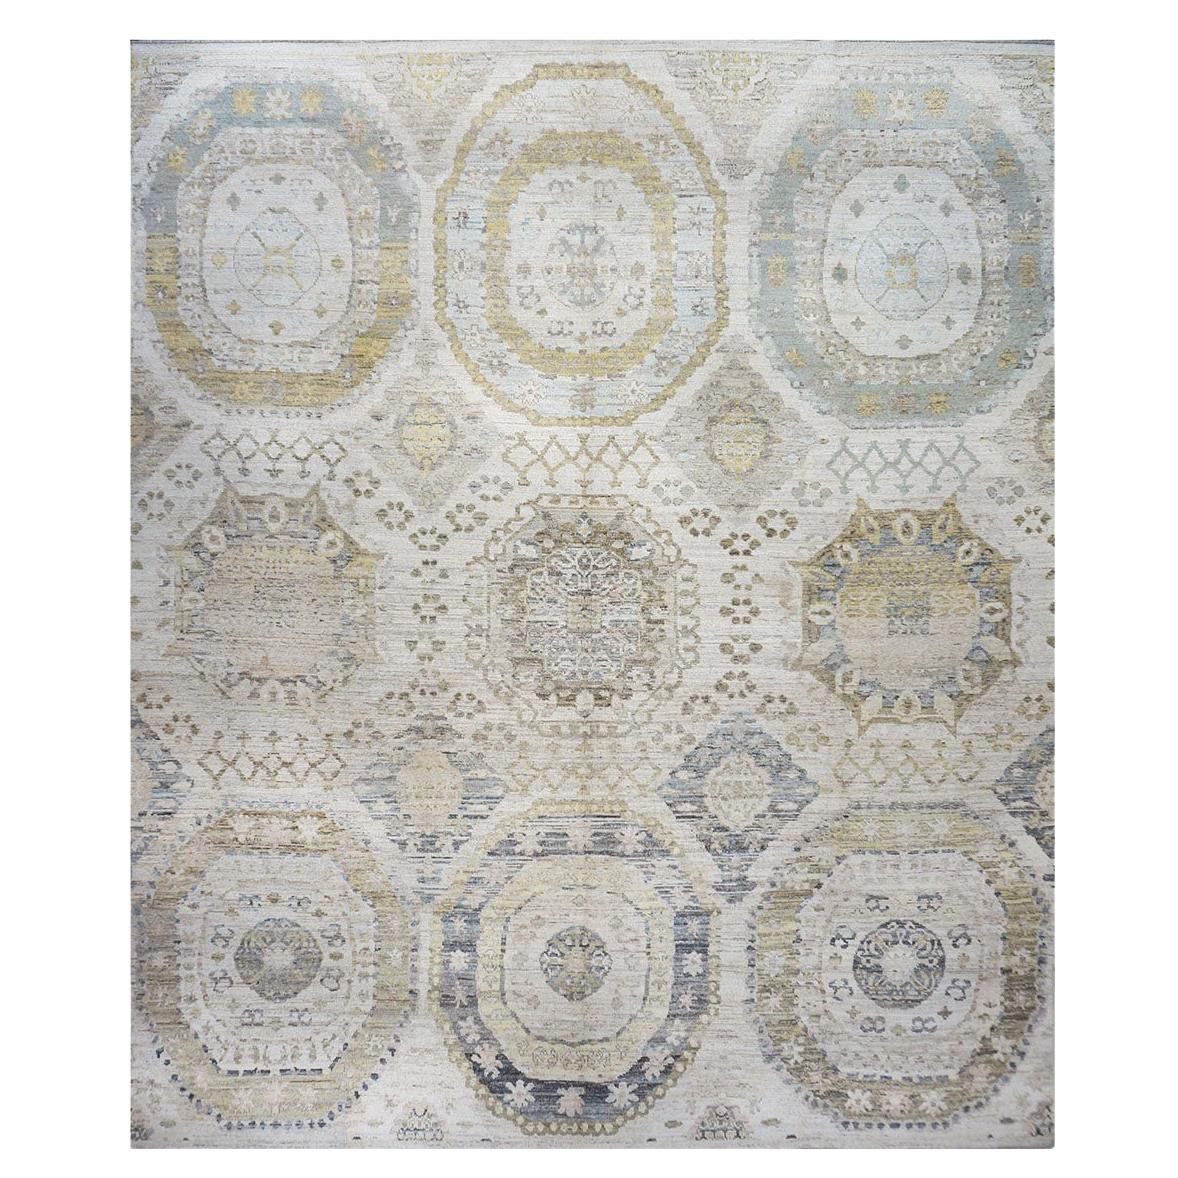 Türkischer Oushak-Teppich des 21. Jahrhunderts 13x15 in Elfenbein, Olivgrün, & Schieferblau, handgefertigt